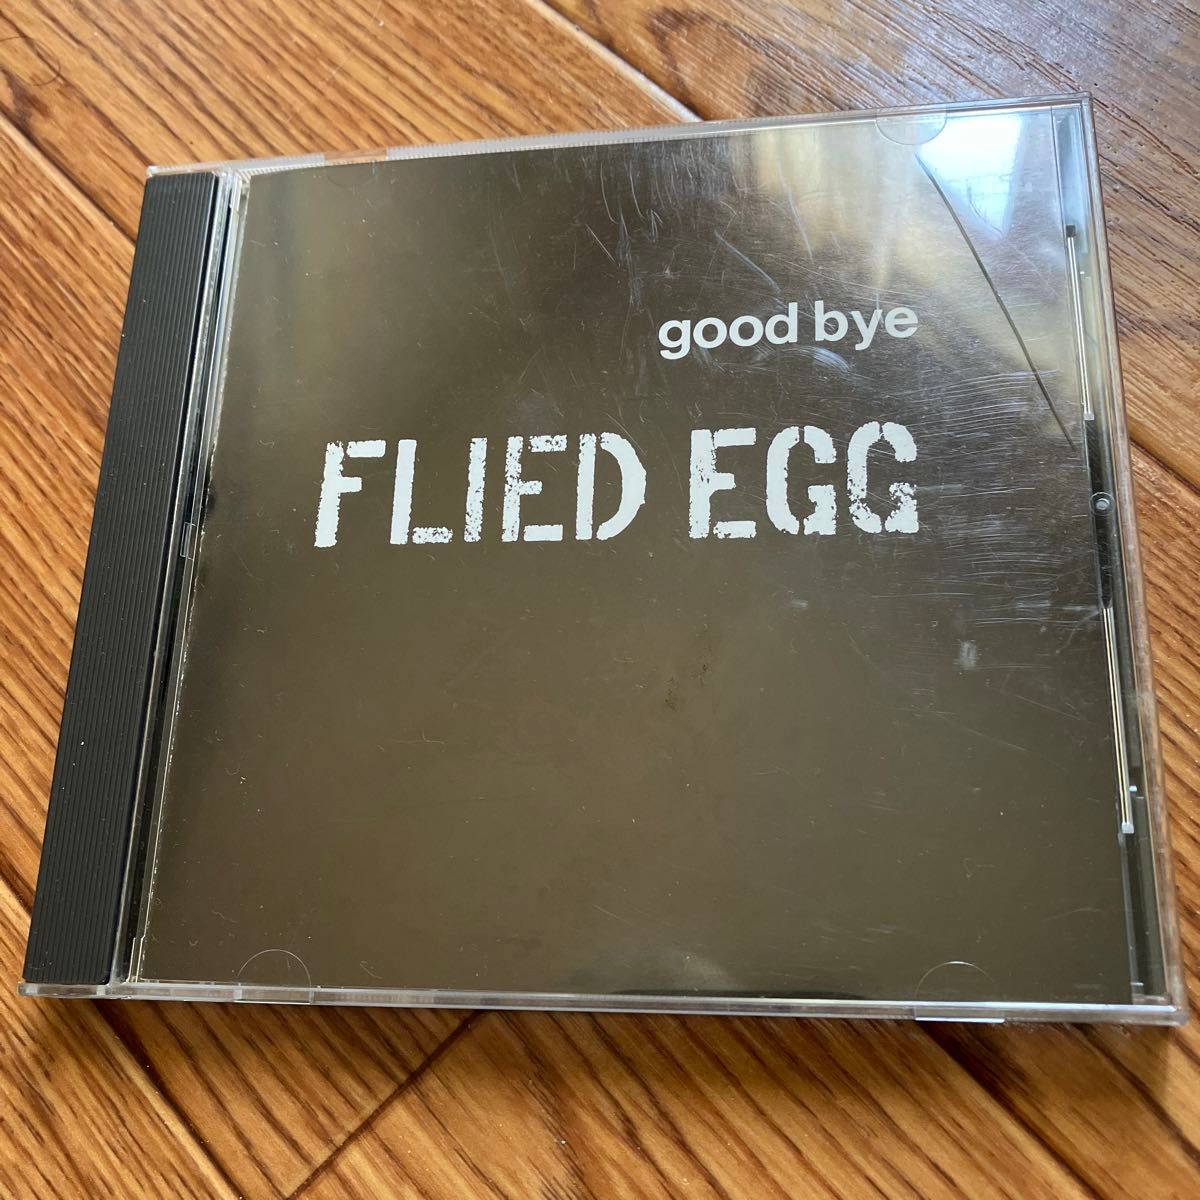 Goodbye flied egg